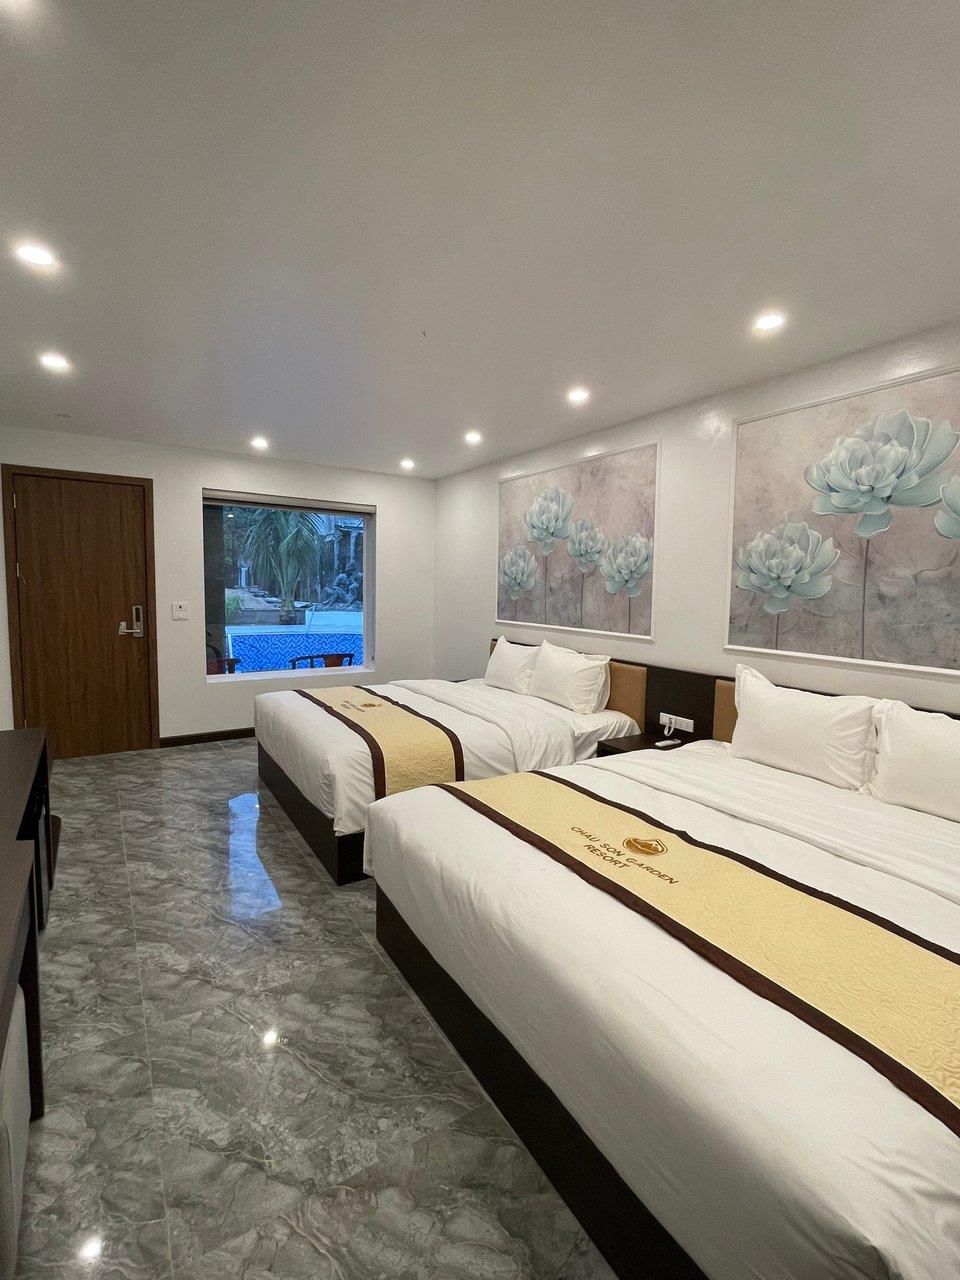 Châu Sơn Villa 1 ngủ 2 giường cỡ king - Châu Sơn Garden Resort